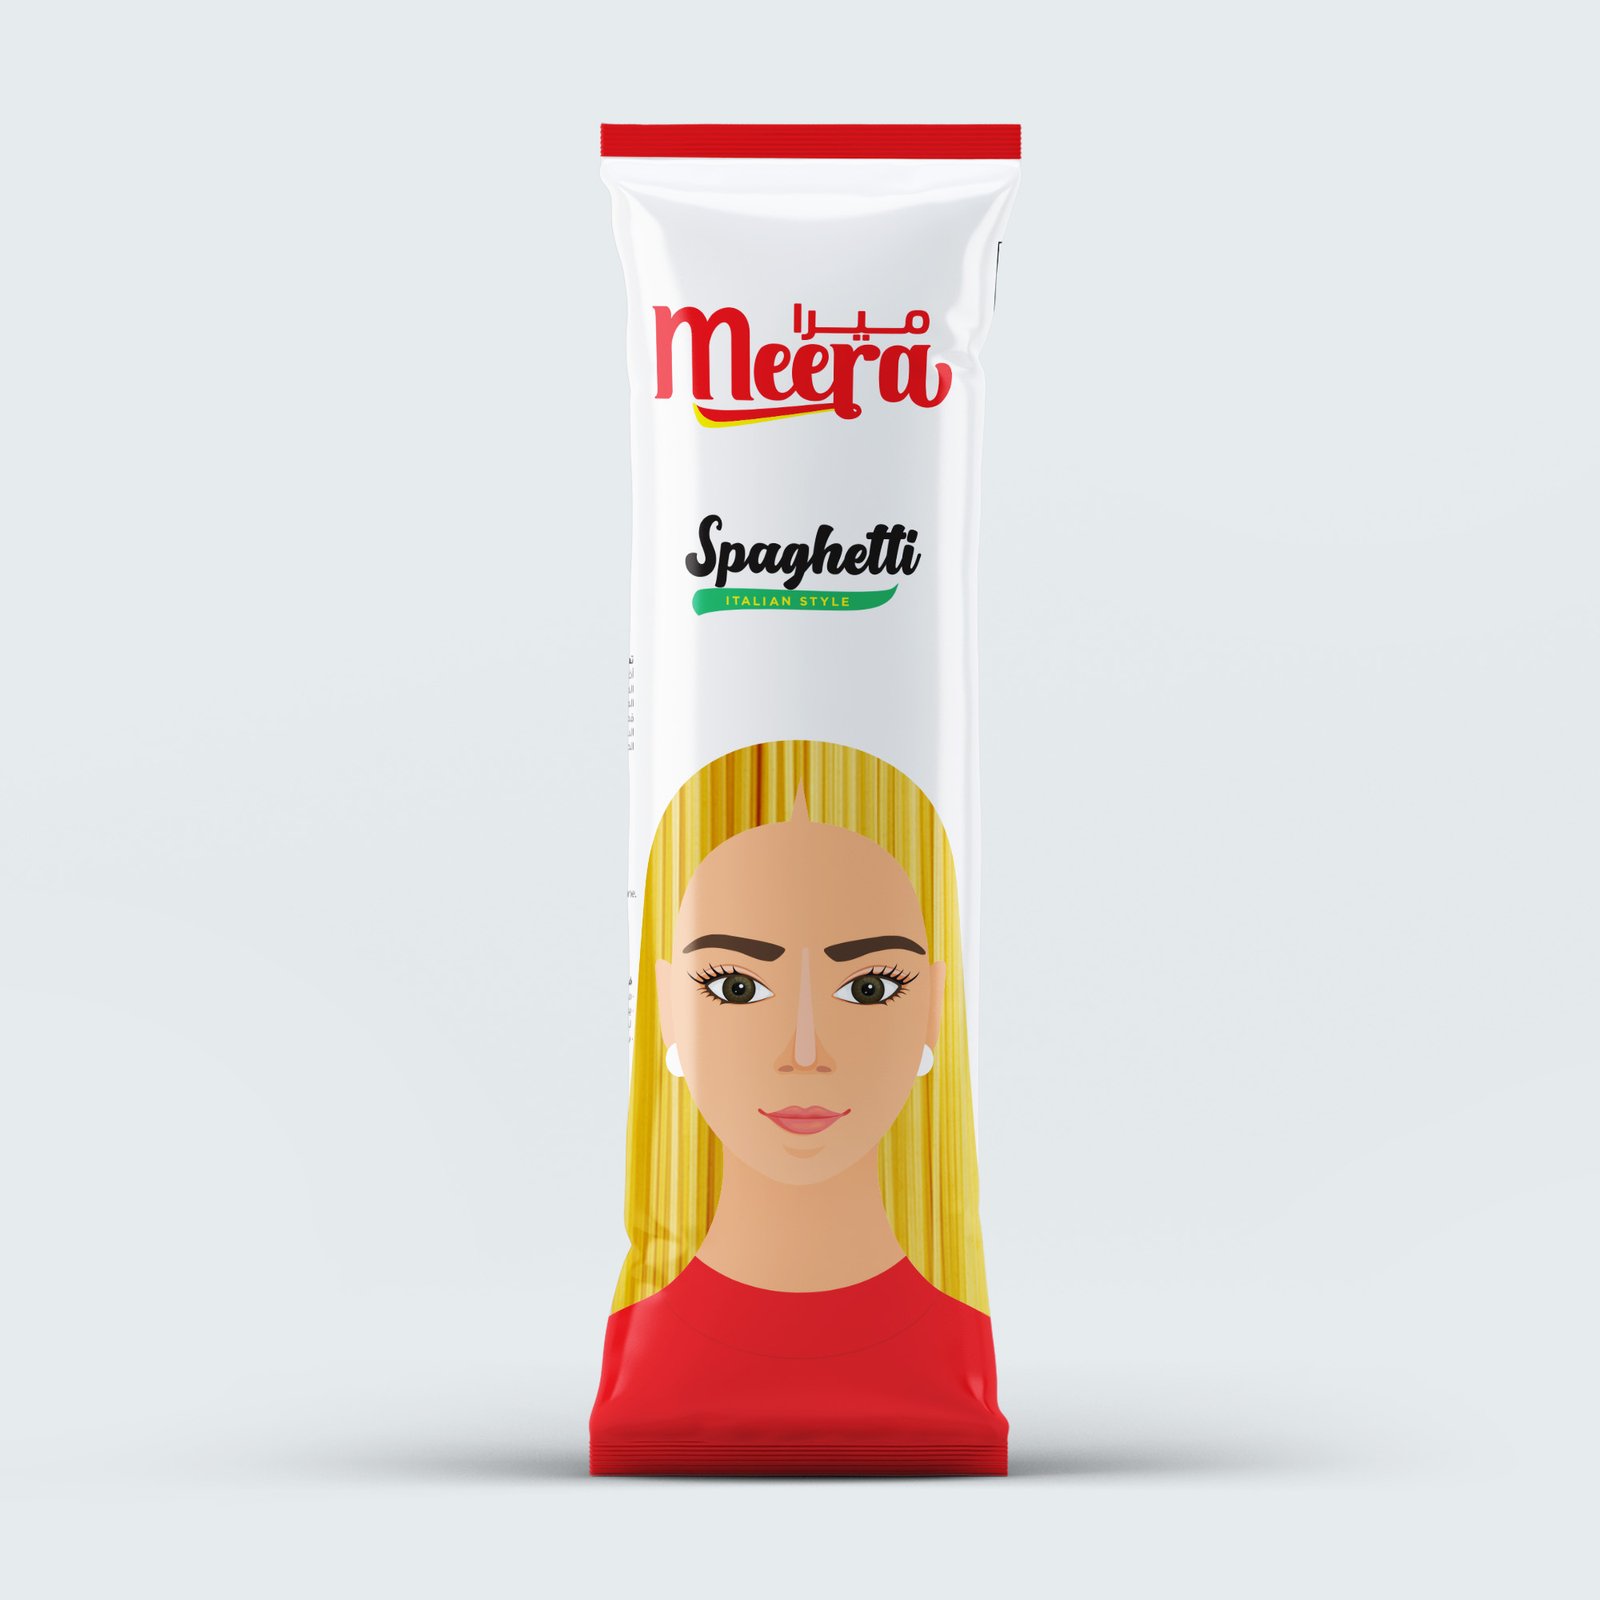 Meera Spaghetti